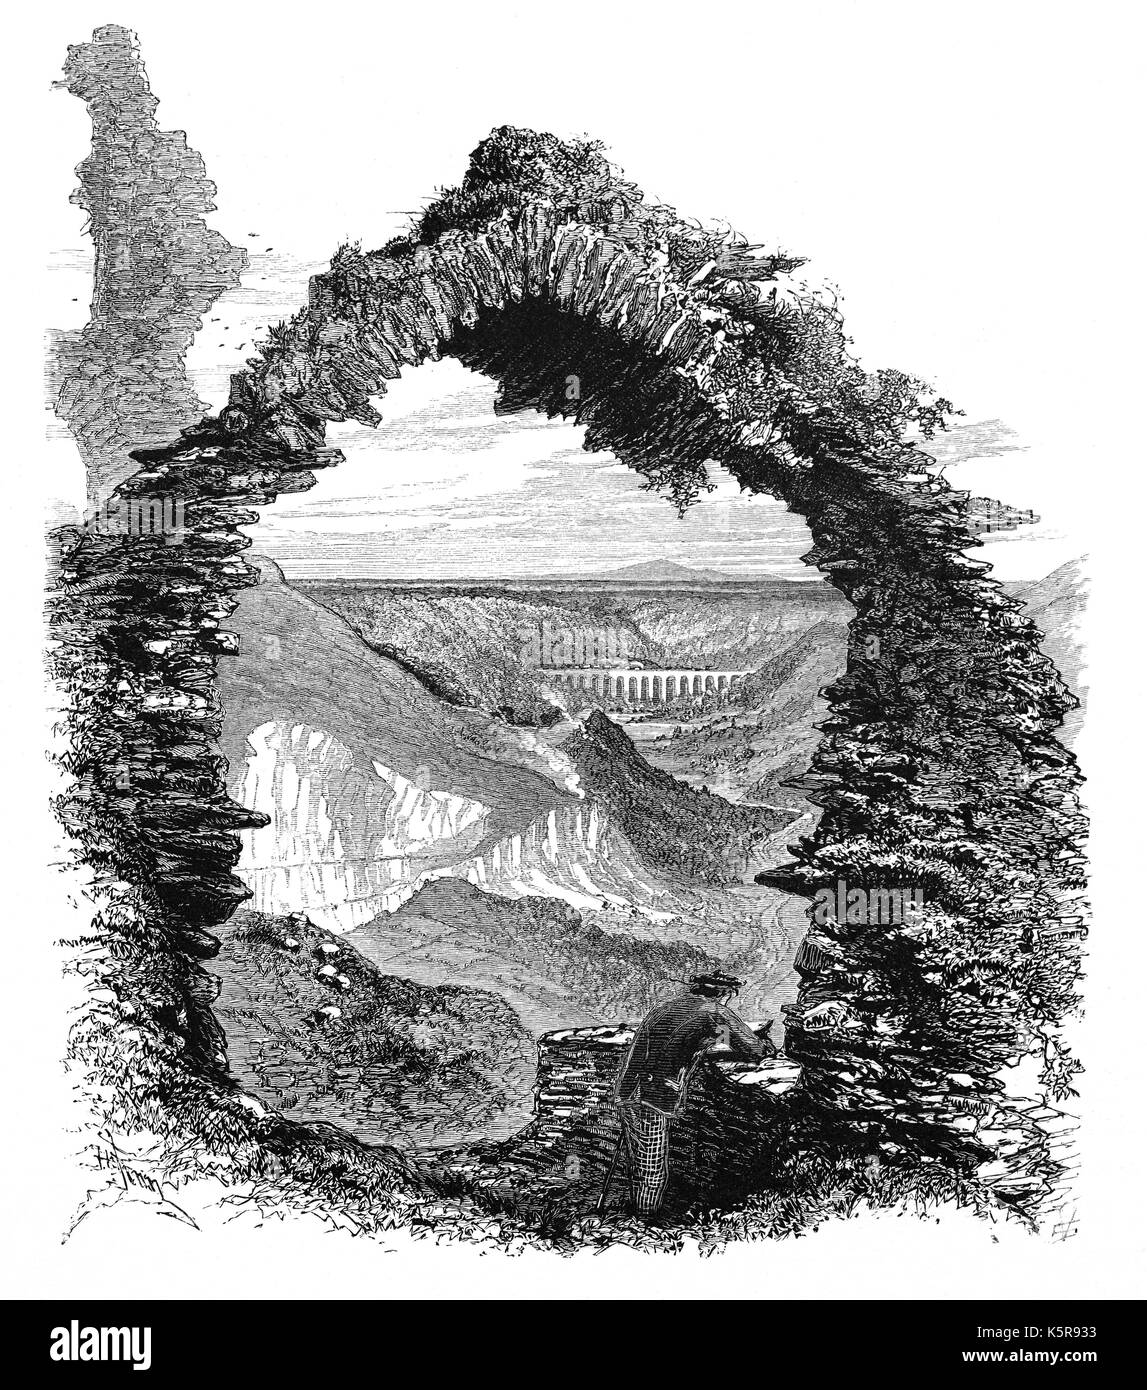 1870 : Le pont-canal de Pontcysyllte qui transporte le canal de Llangollen sur la rivière Dee, vu à travers les ruines d'un arc de Castell Dinas Brân. Le château médiéval, probablement construit en 1260, occupe un site perché au-dessus de la ville de Llangollen Denbighshire, dans le Nord du Pays de Galles. Banque D'Images